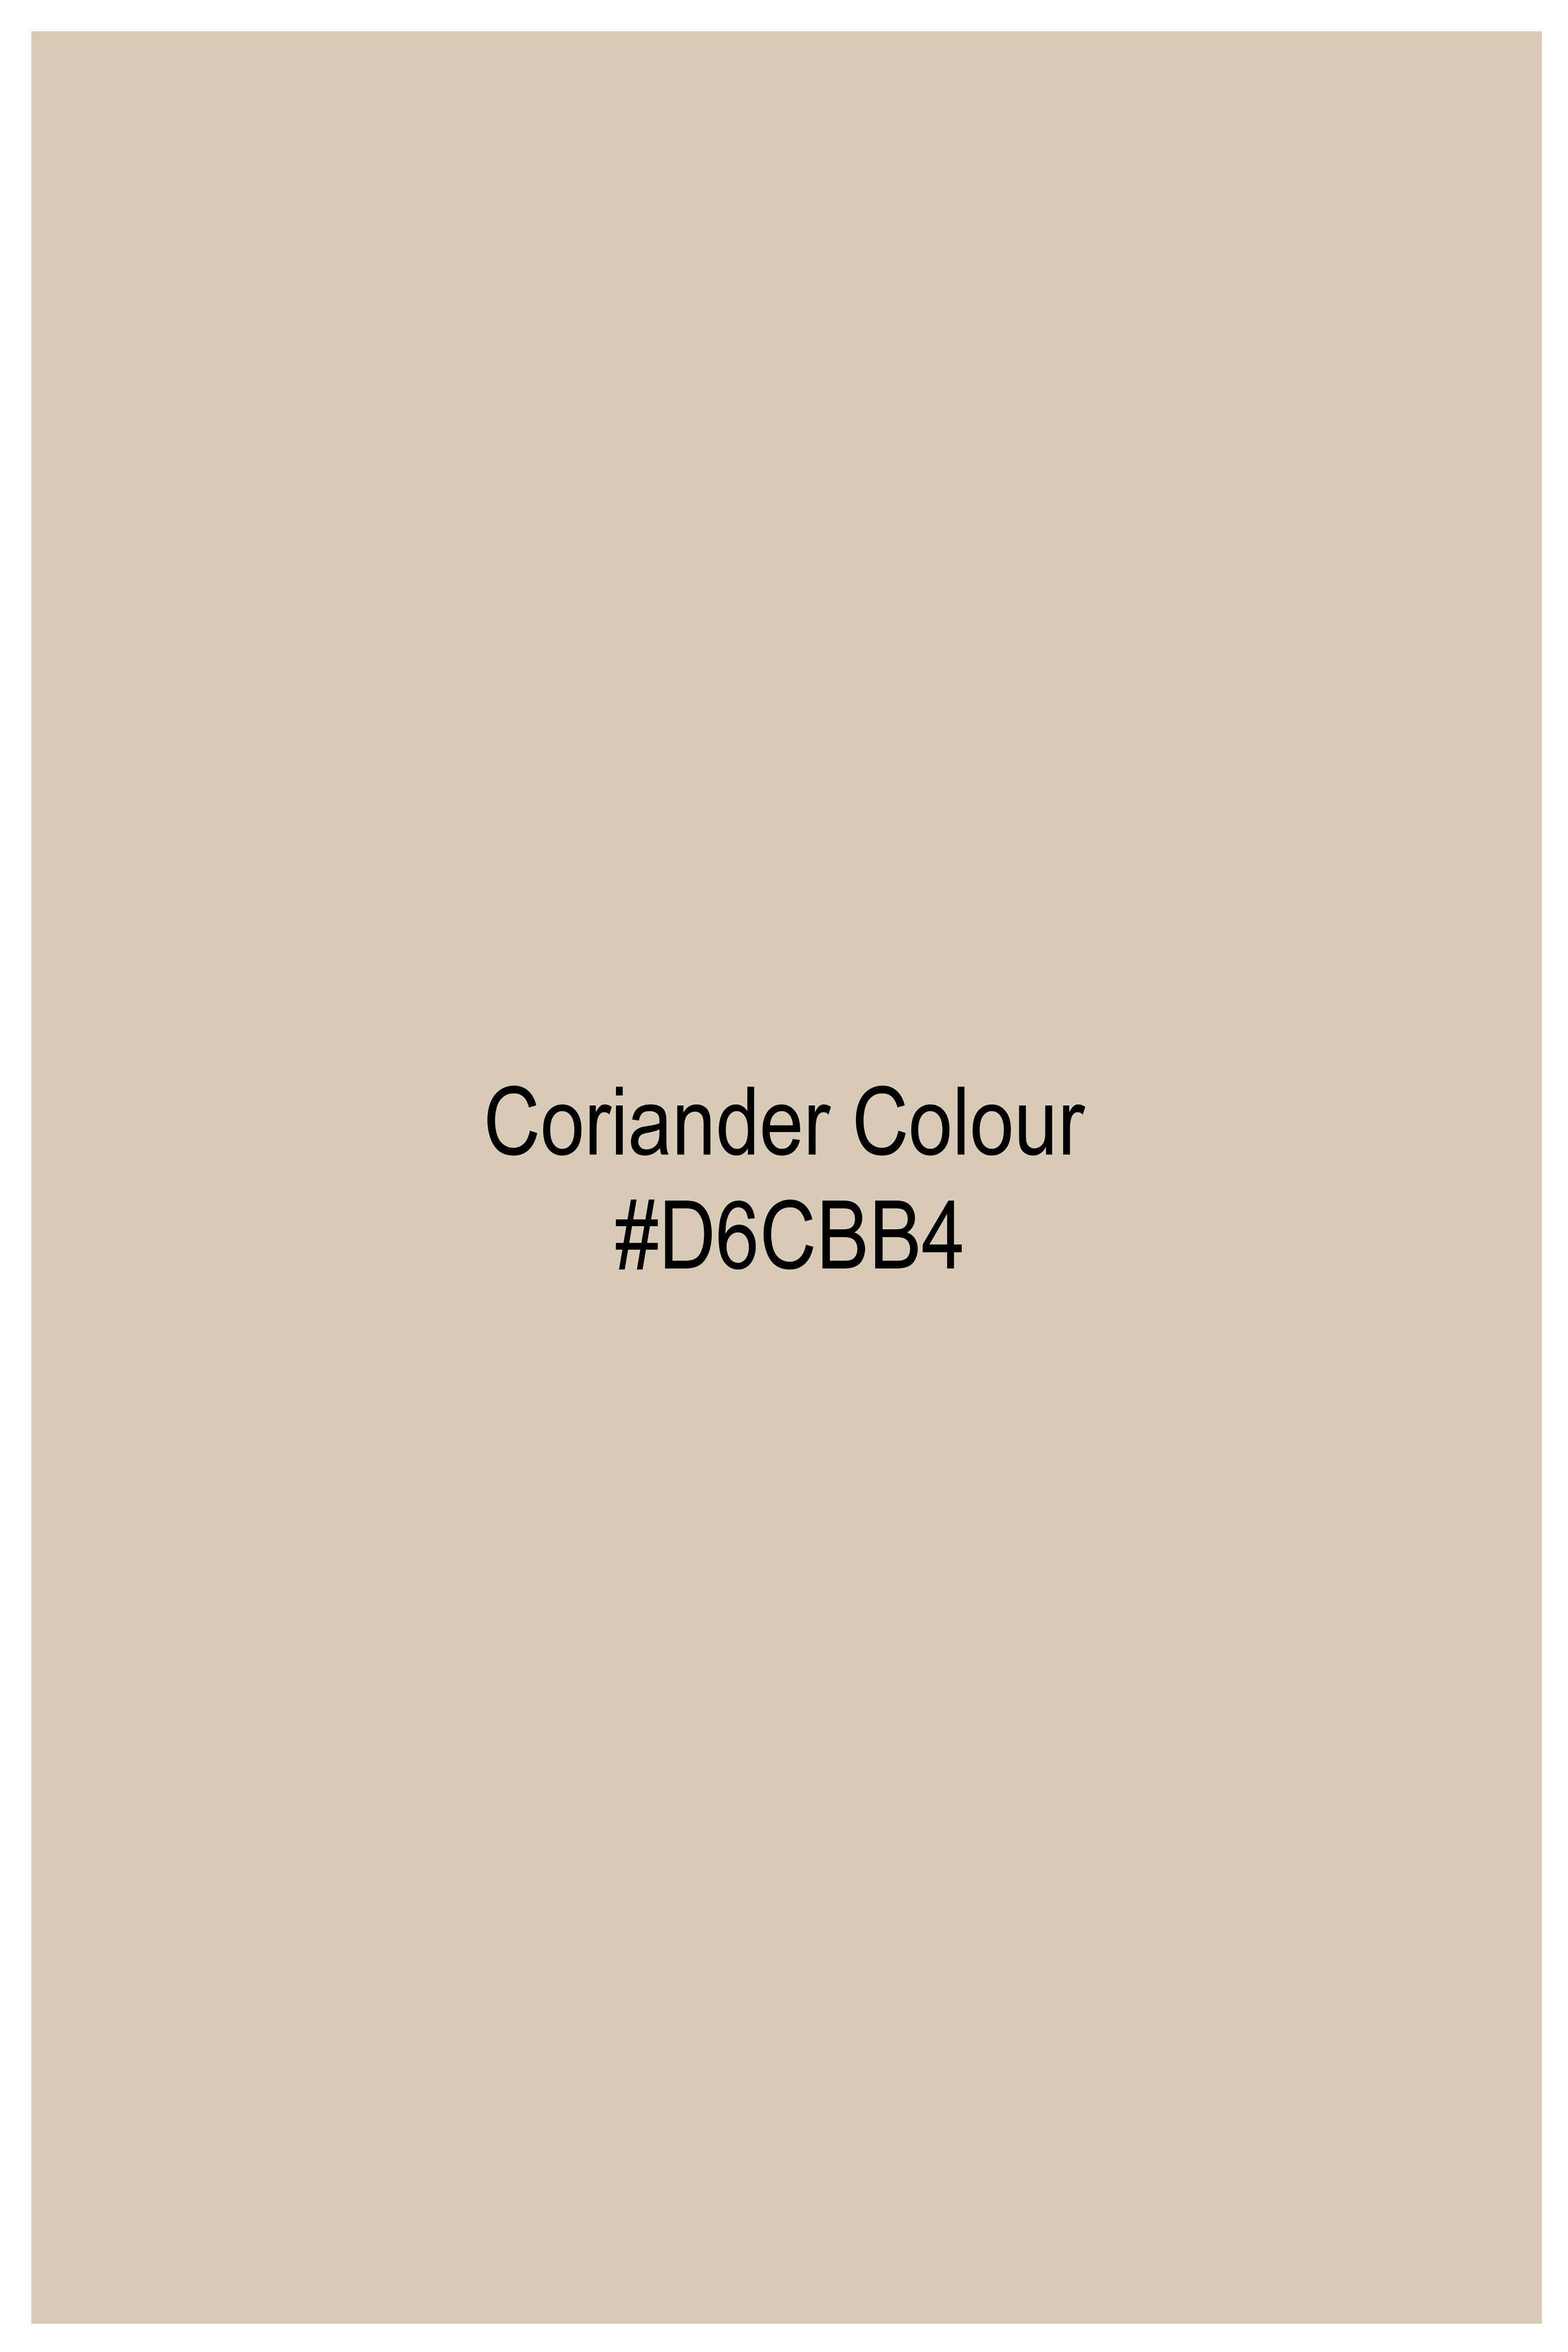 Coriander Brown Super Soft Premium Cotton Designer Shirt